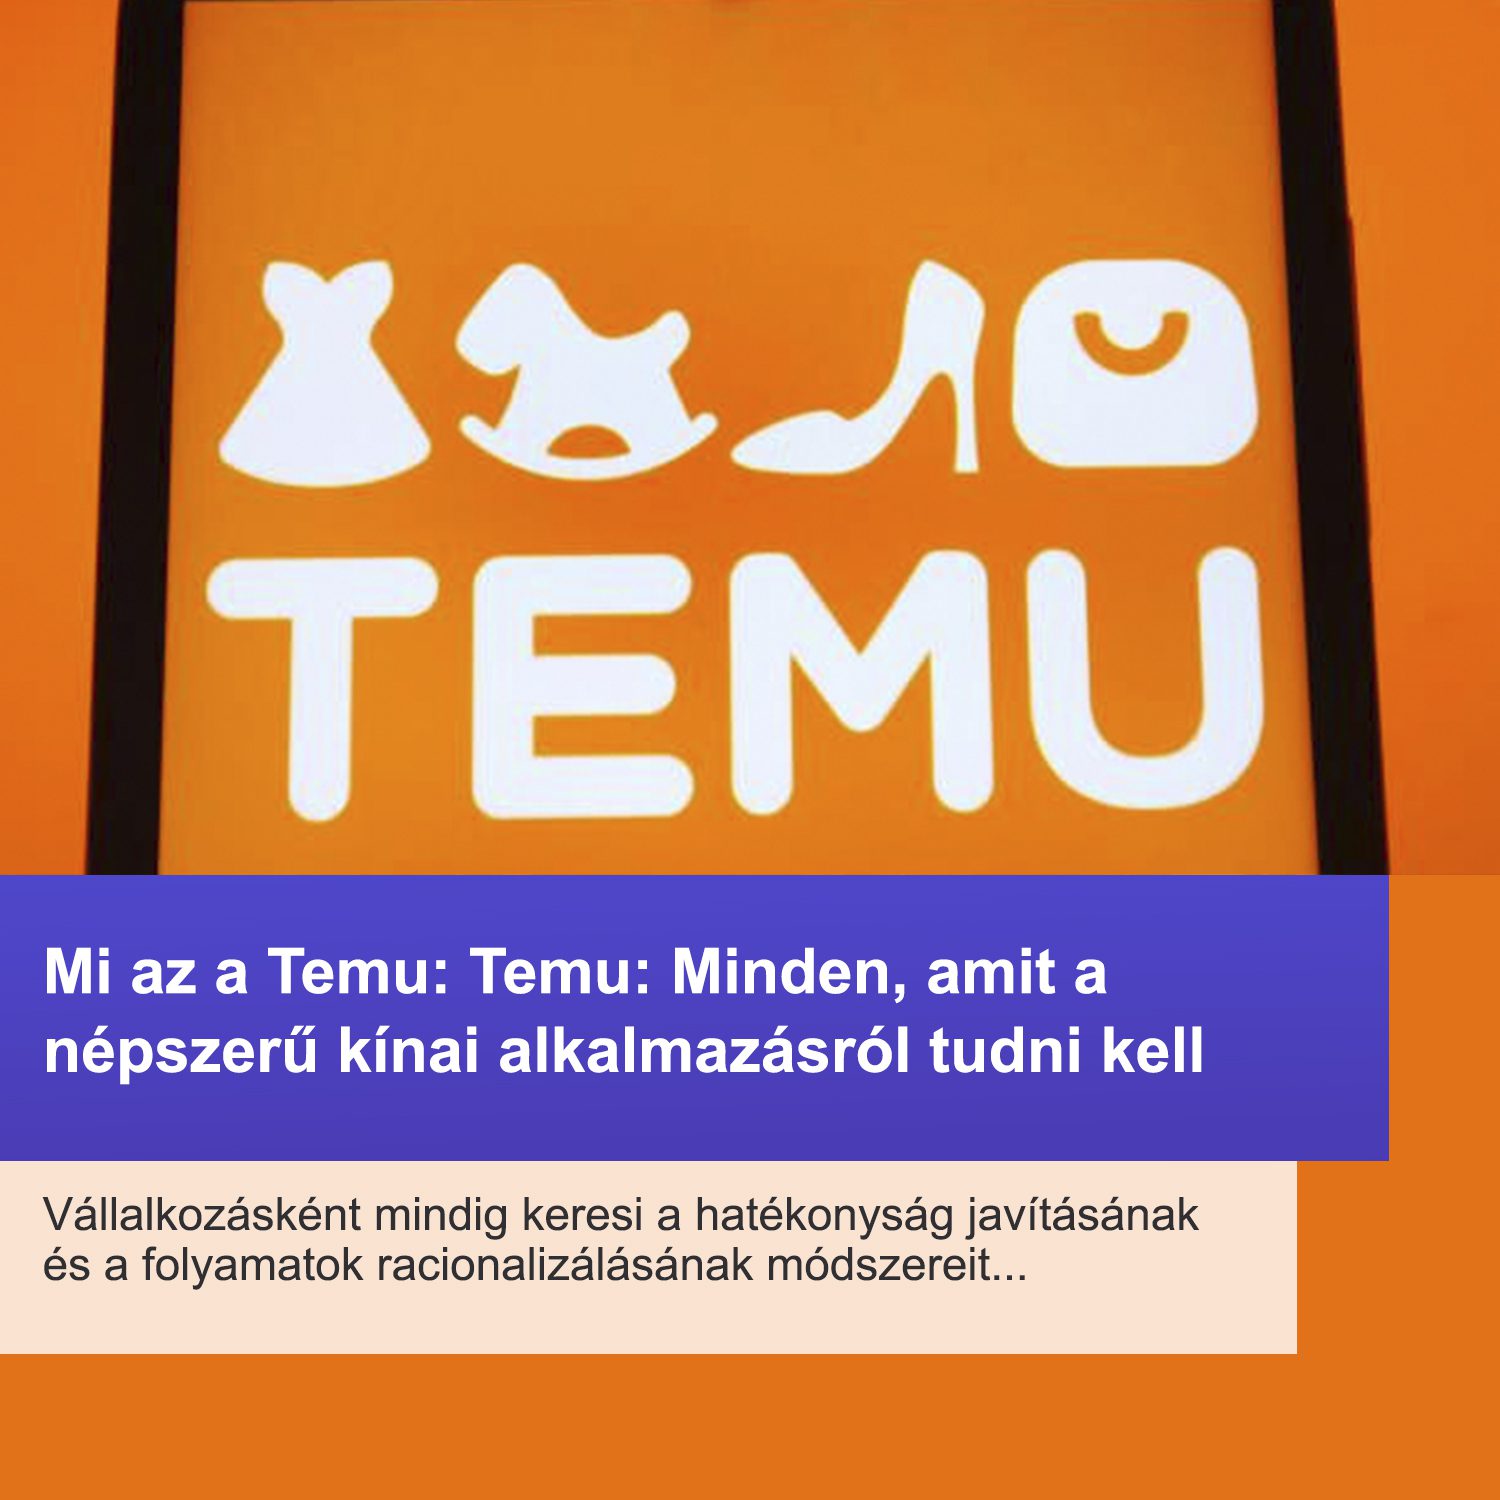 Mi az a Temu: Temu: Minden, amit a népszerű kínai alkalmazásról tudni kell